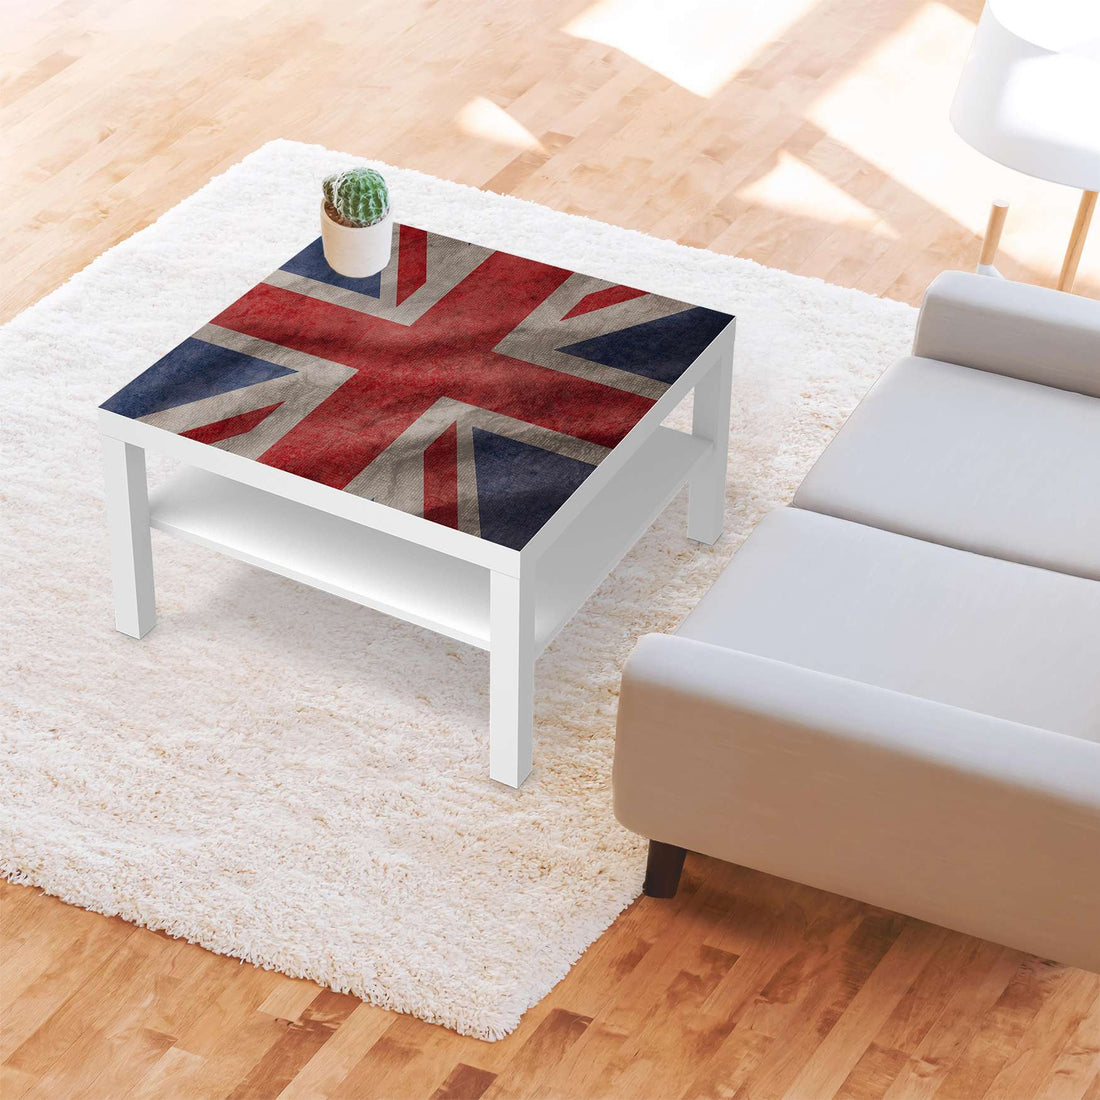 Selbstklebende Folie Union Jack - IKEA Lack Tisch 78x78 cm - Wohnzimmer